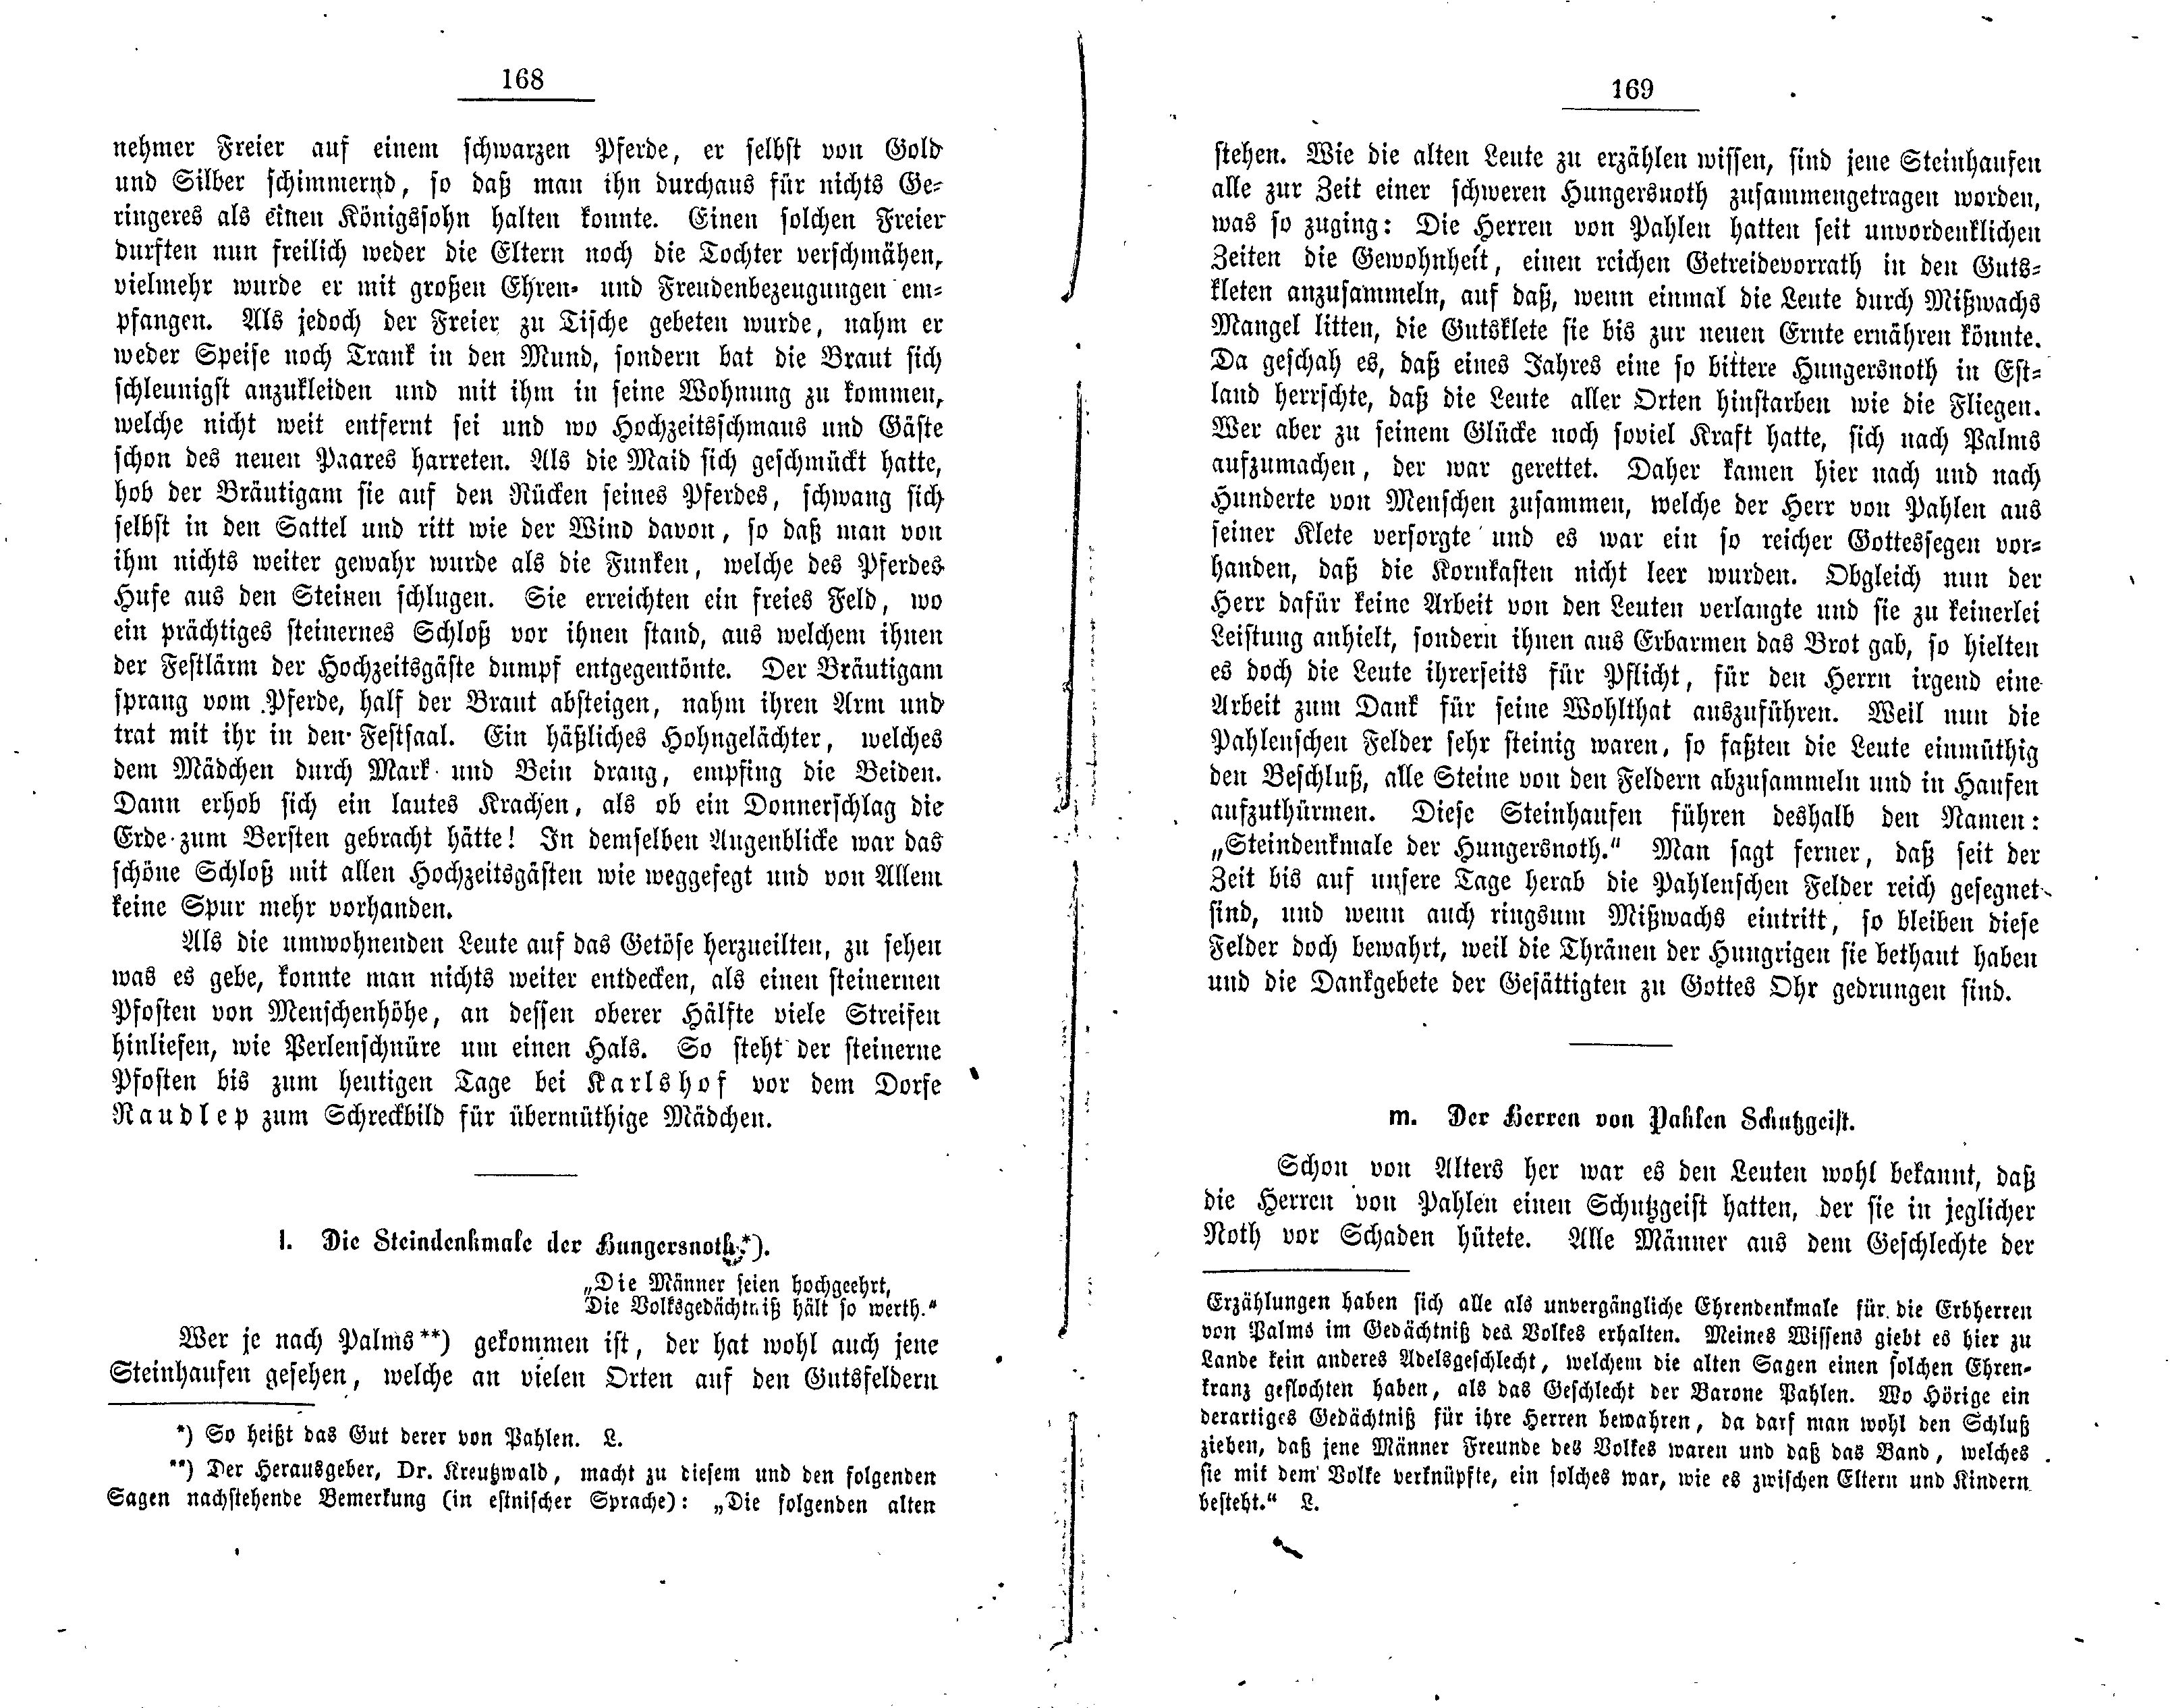 Die Steindenkmale der Hungersnoth (1881) | 1. (168-169) Main body of text